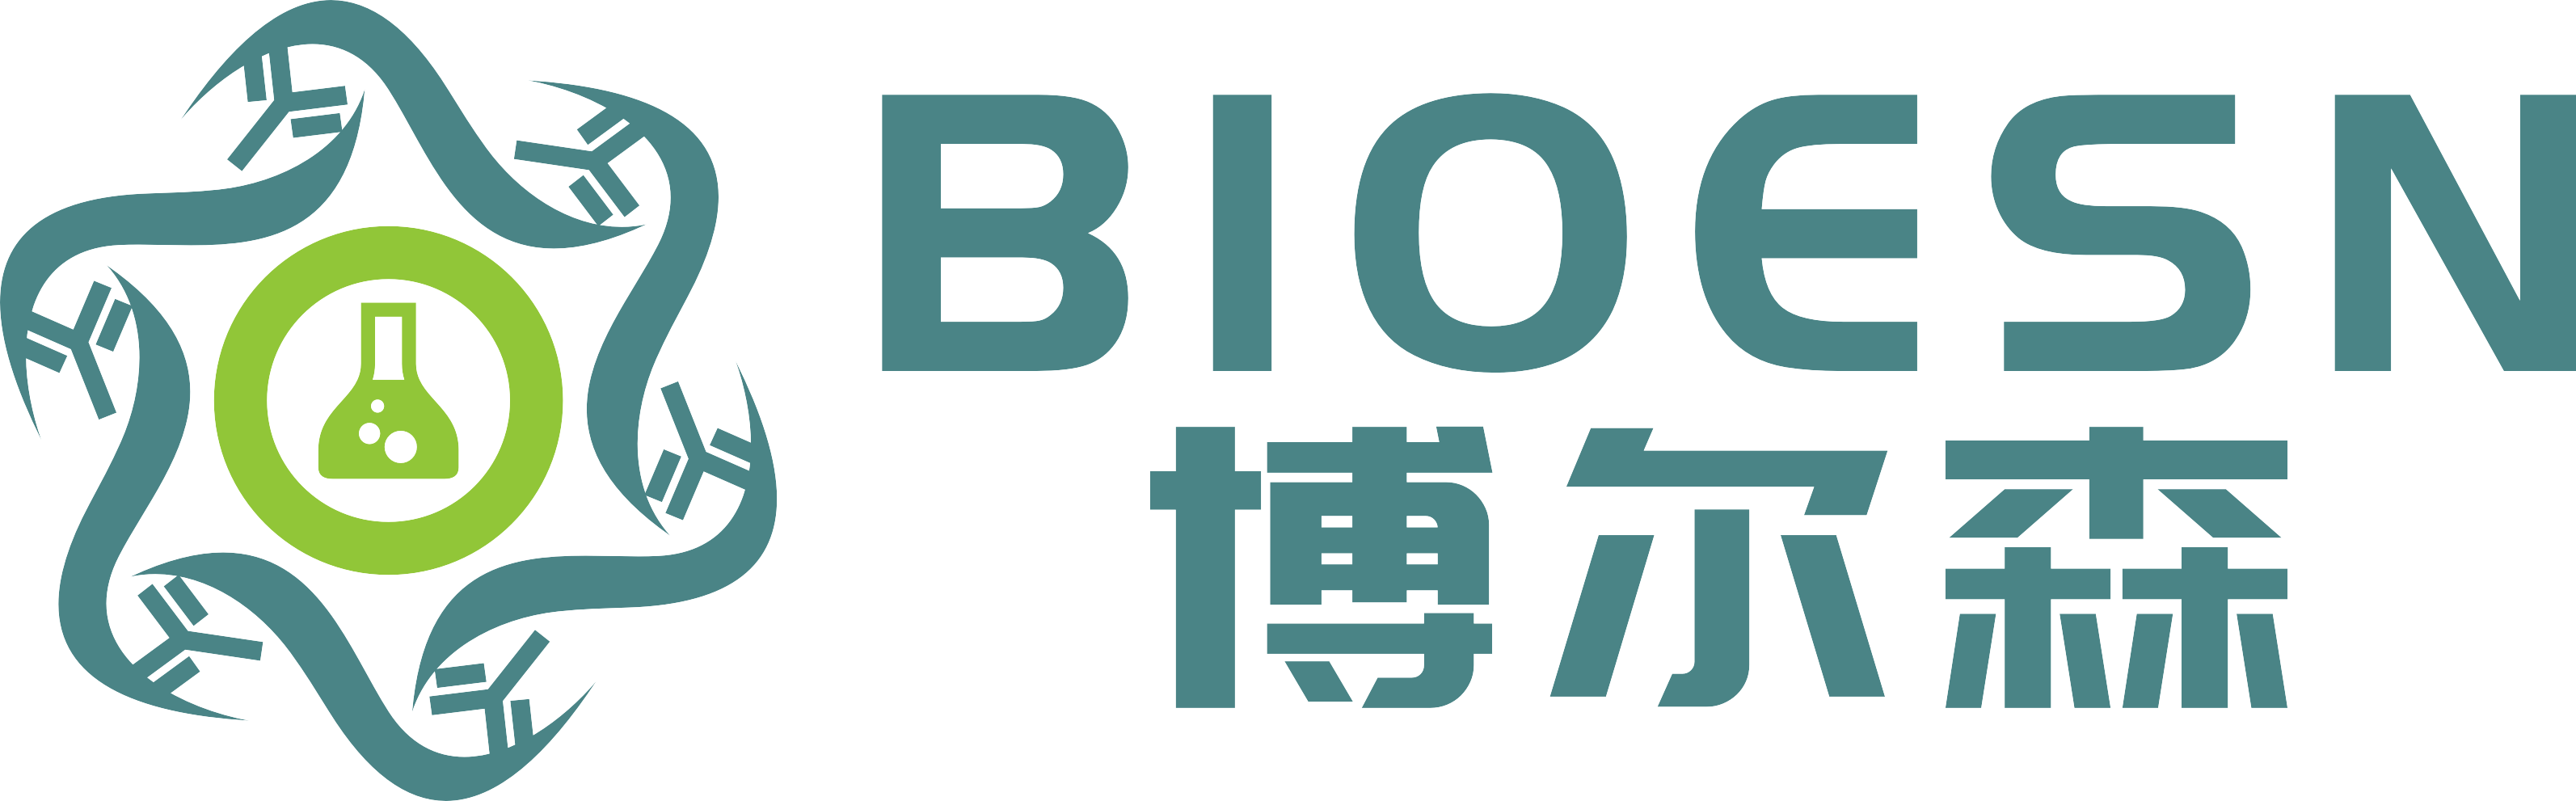 上海博尔森生物科技有限公司